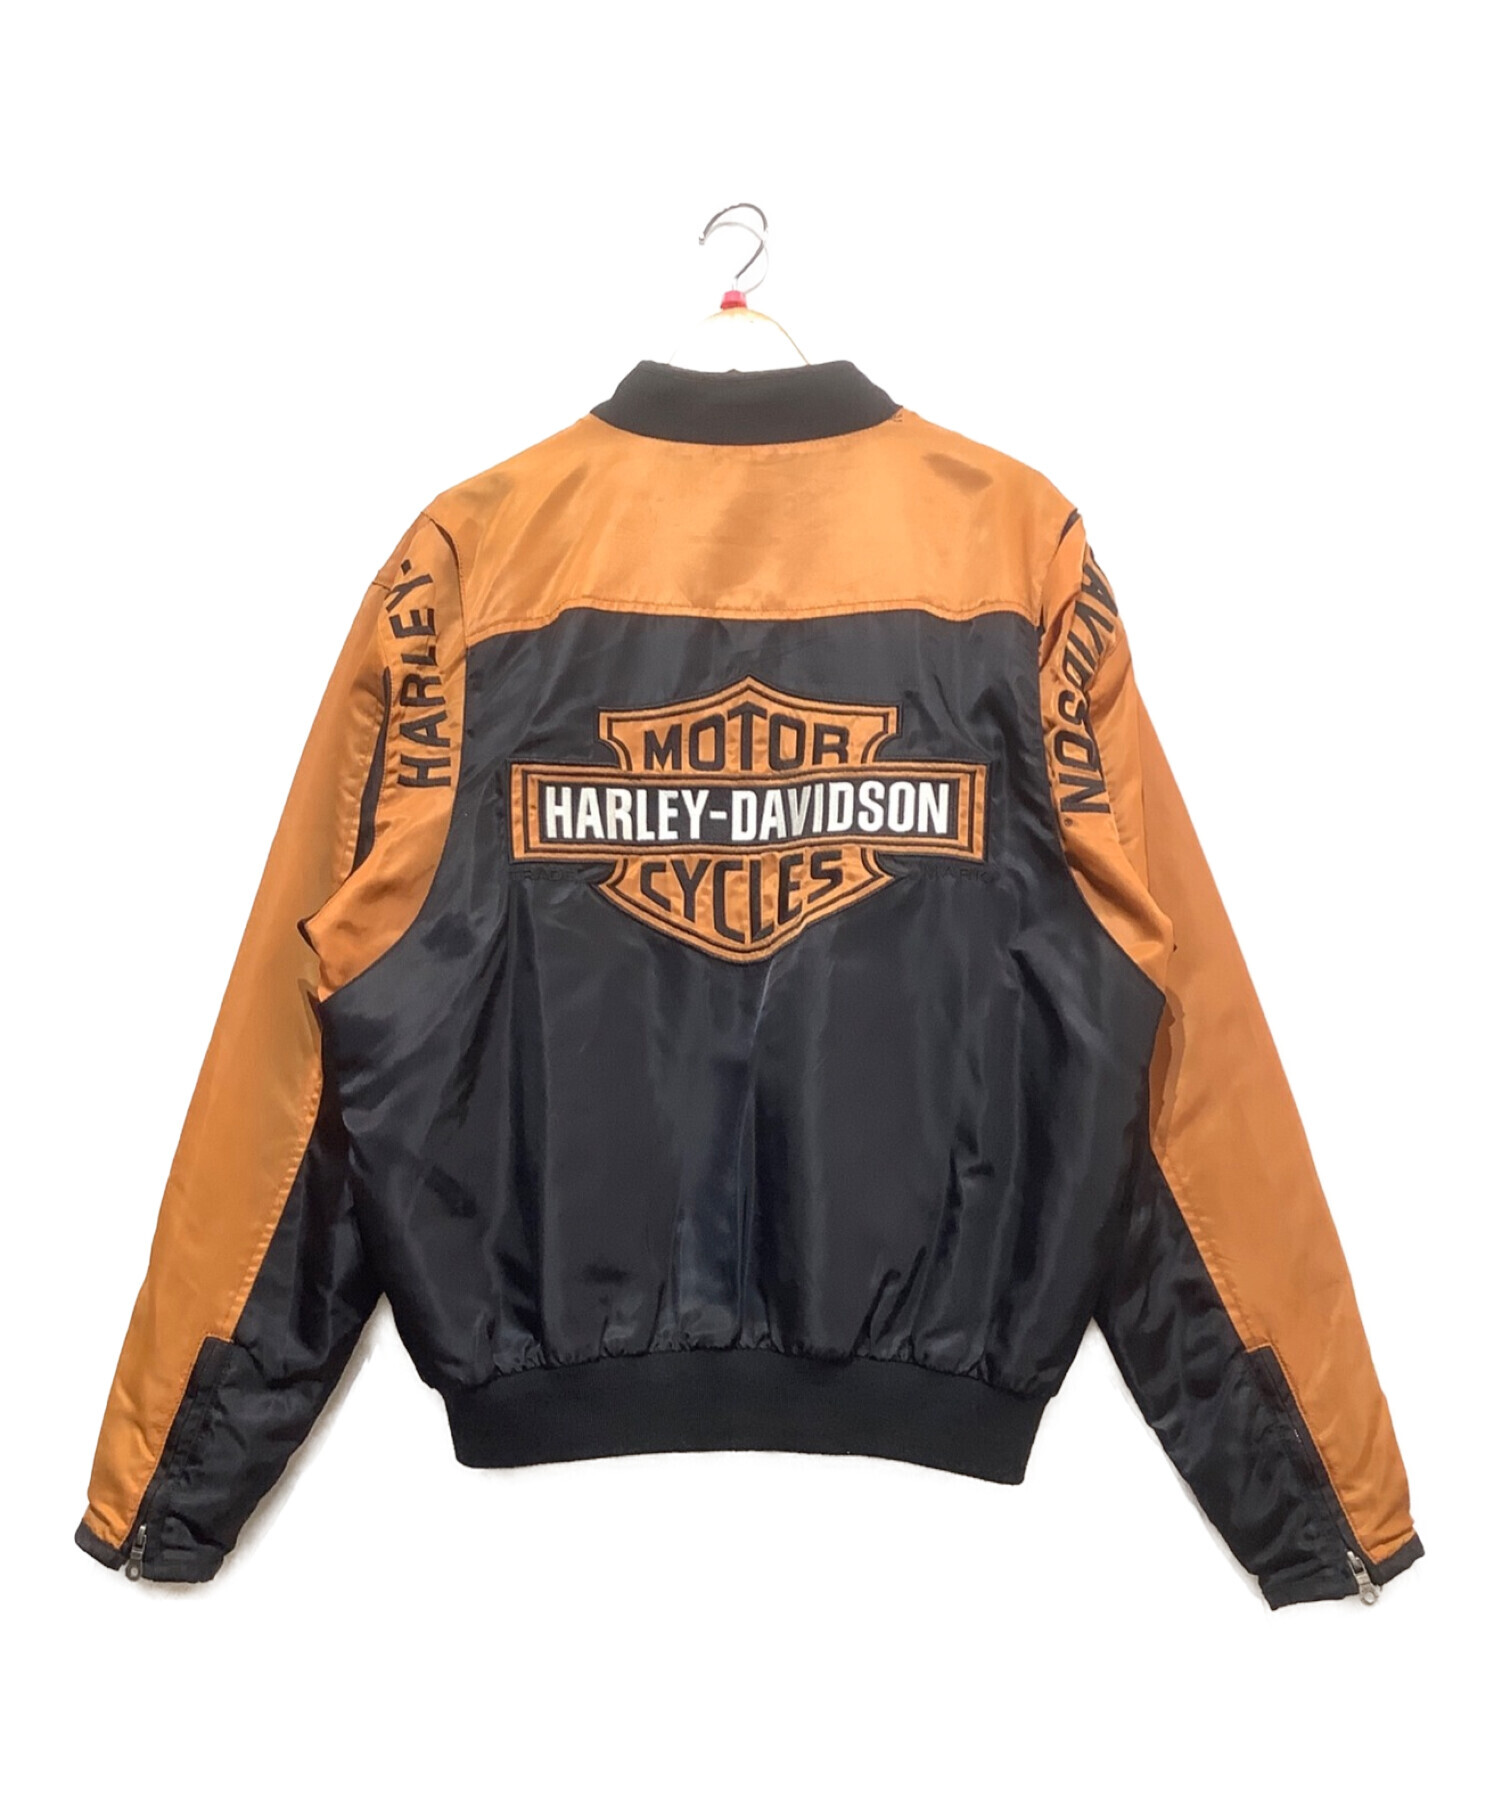 HARLEY-DAVIDSON (ハーレーダビッドソン) メンズバー&シールドロゴナイロンジャケット ブラック×オレンジ サイズ:M